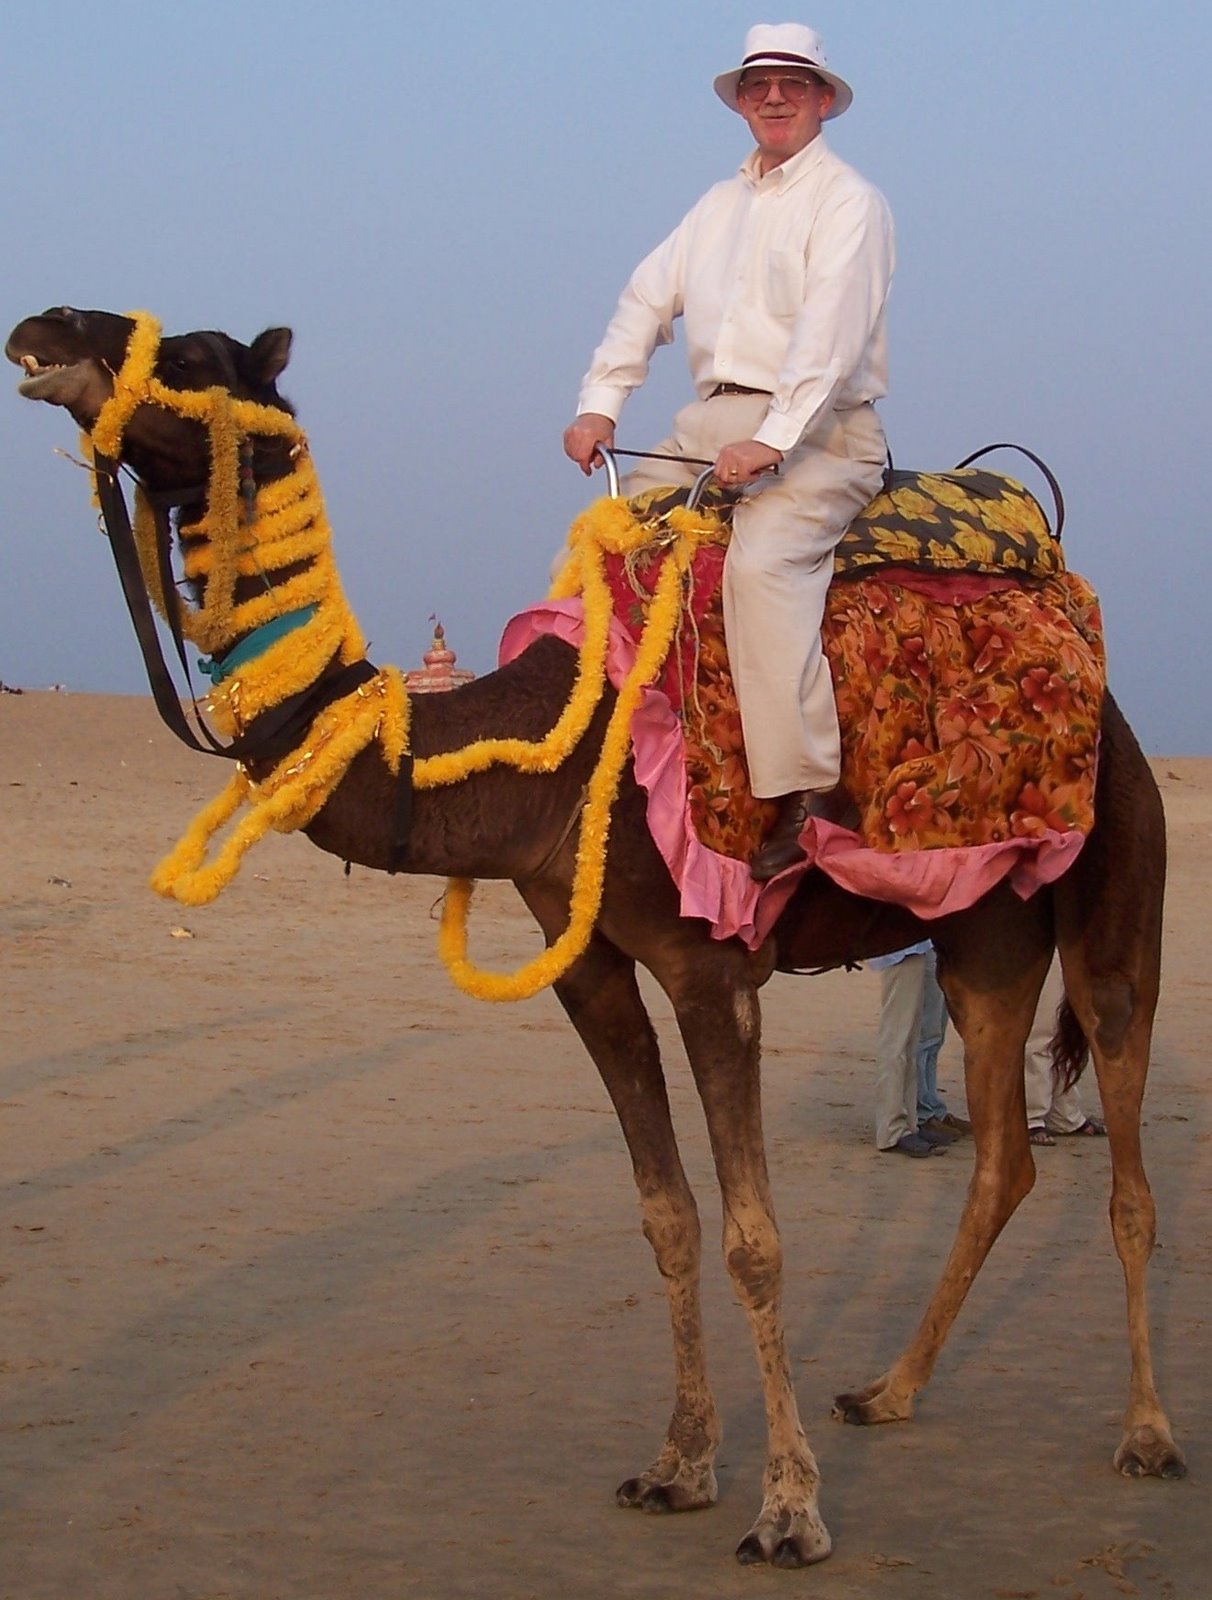 [Bernard+at+Chandrabagha+beach-camel+ride+all+aboard.JPG]